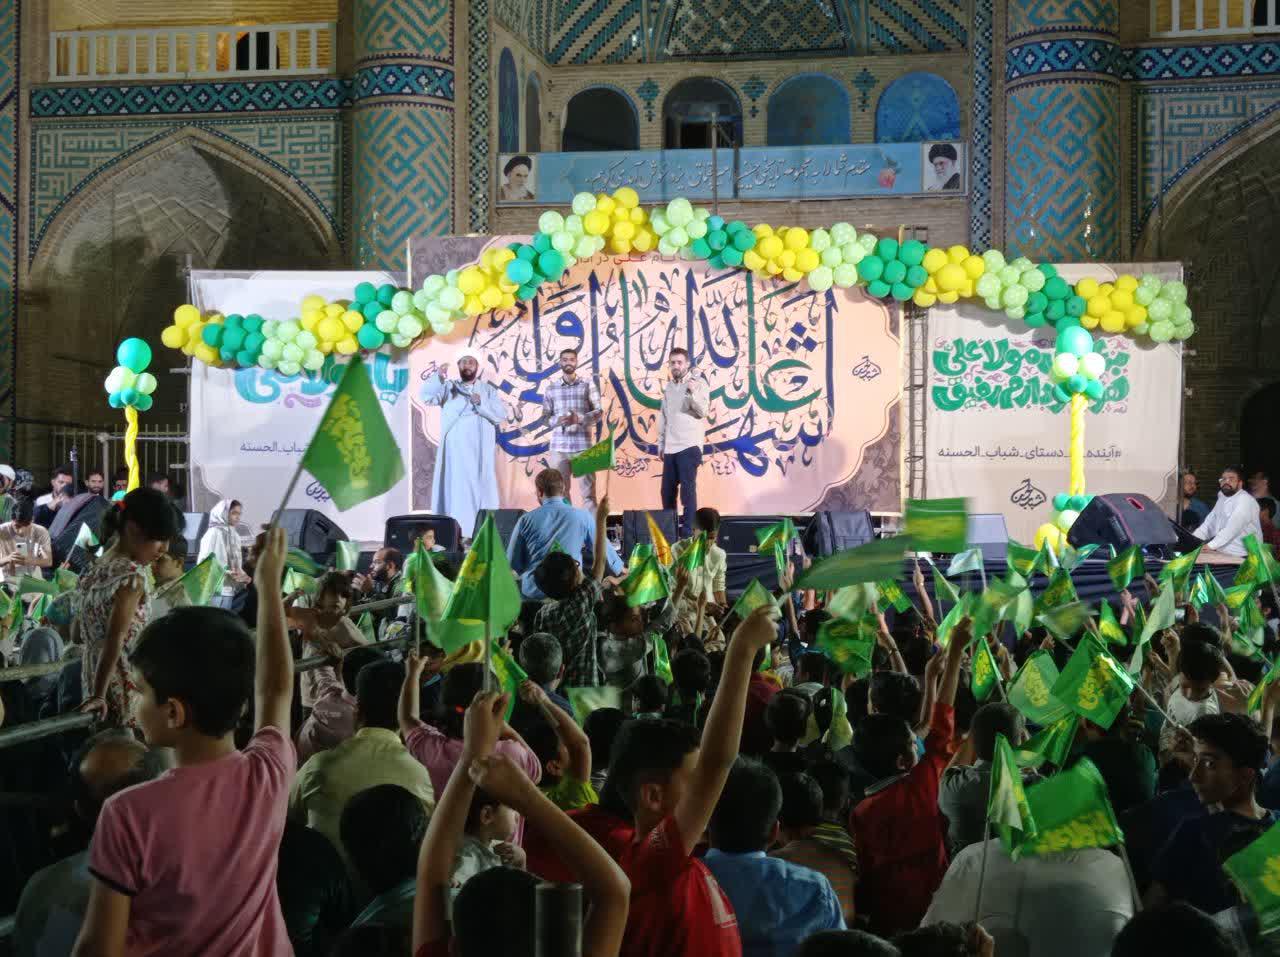 جشن « بچه های باباحیدر» در میدان امیرچخماق یزد برگزار شد+ تصاویر  